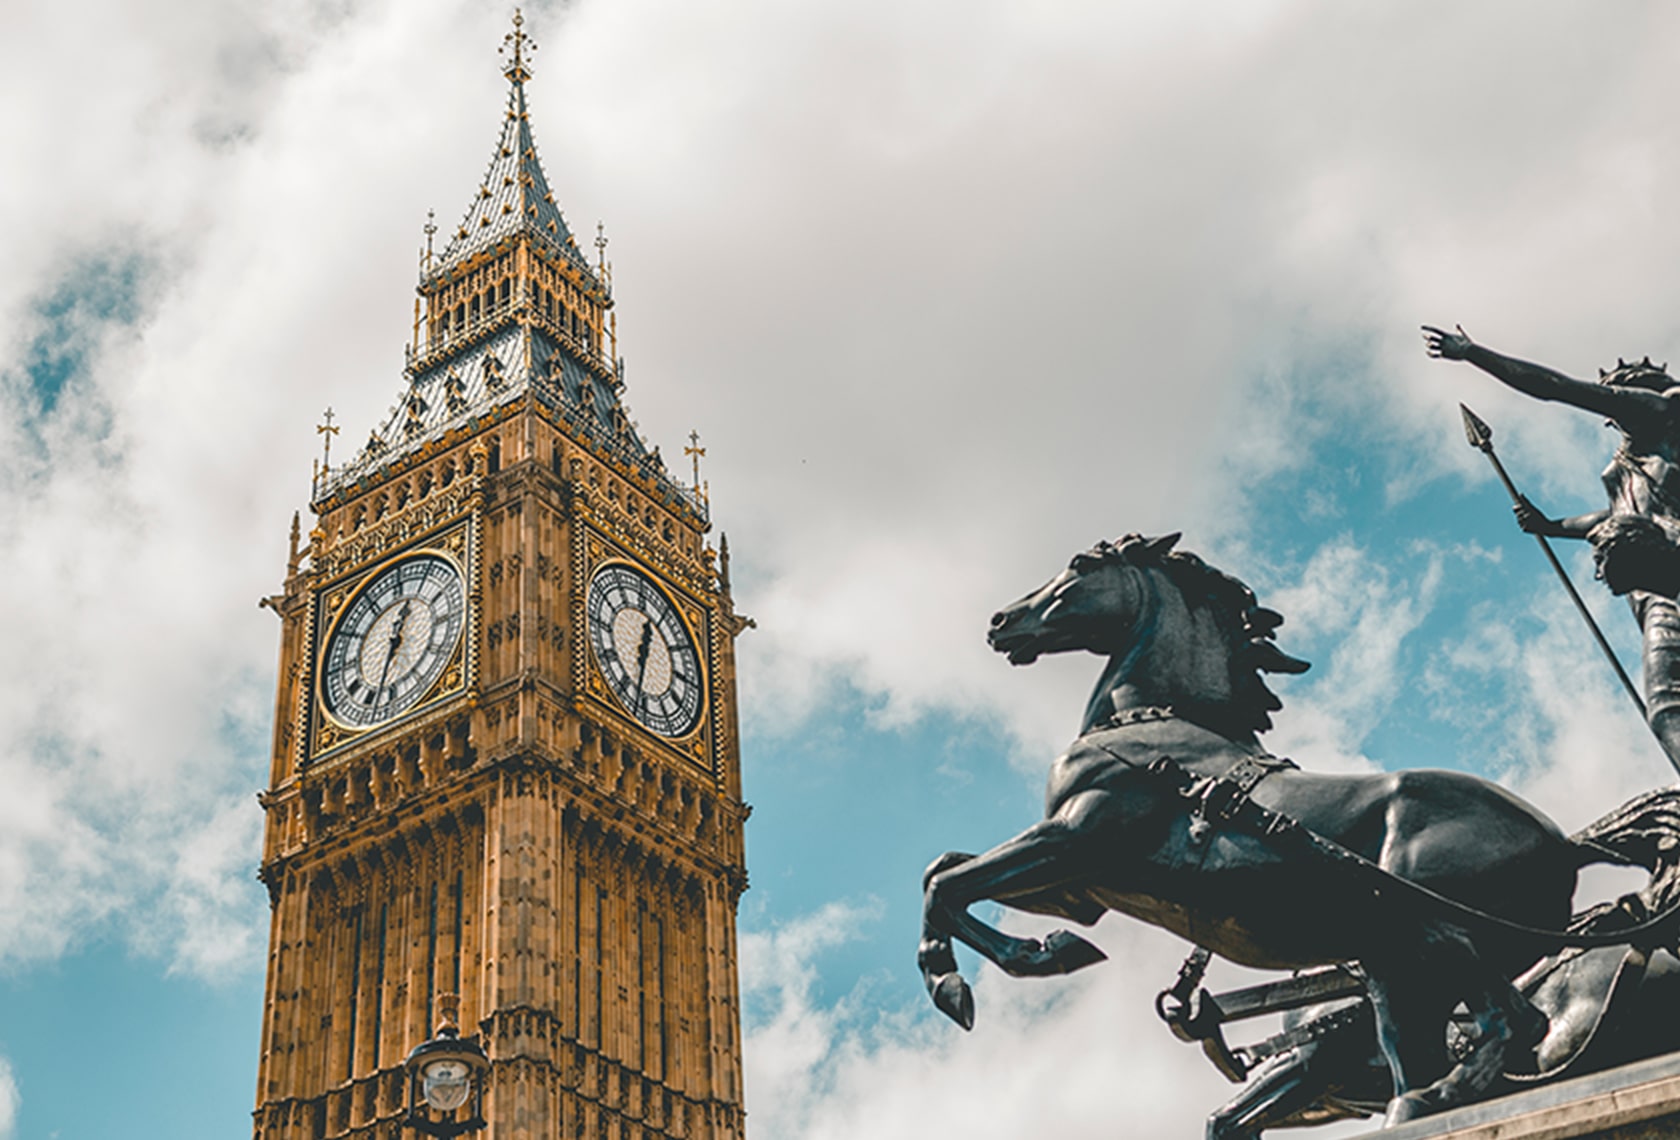 英国のEU離脱問題について分かりやすく解説した記事中のイメージ画像です。有名なロンドンの時計塔が写っています。